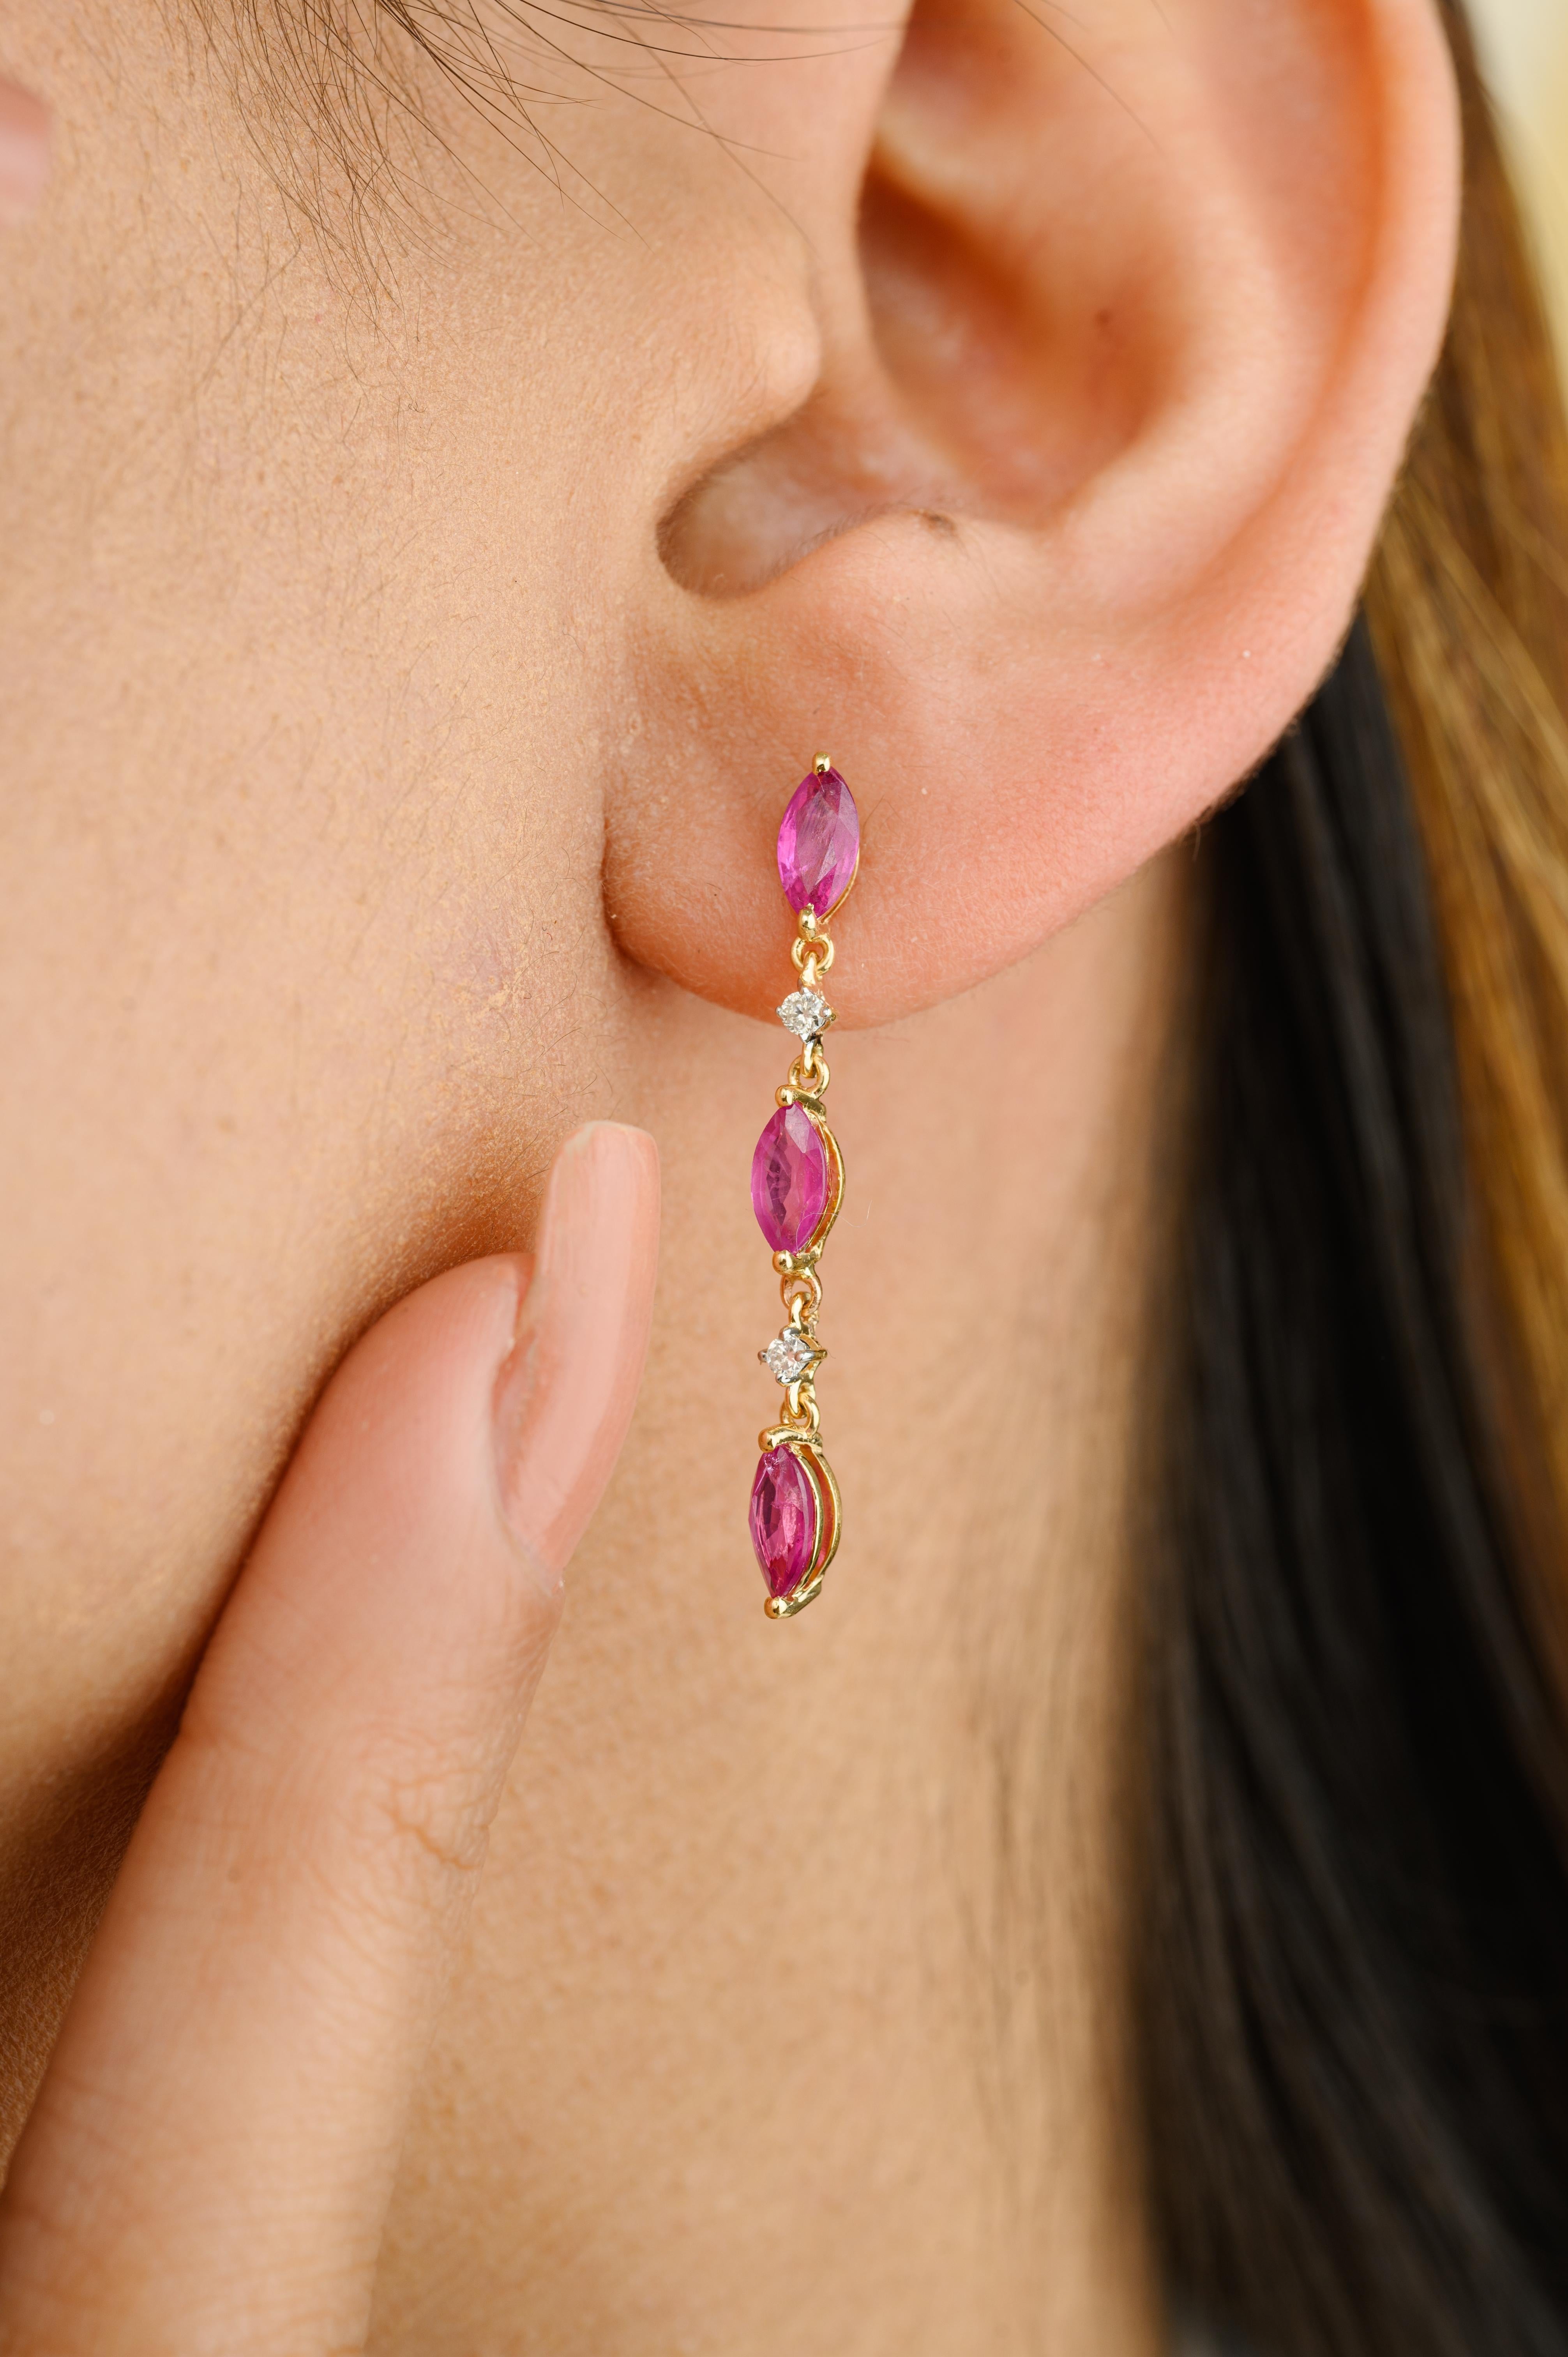 Les boucles d'oreilles pendantes en or 18 carats avec rubis et diamants sont idéales pour mettre en valeur votre look. Vous aurez besoin de boucles d'oreilles pendantes pour mettre en valeur votre look. Ces boucles d'oreilles créent un look